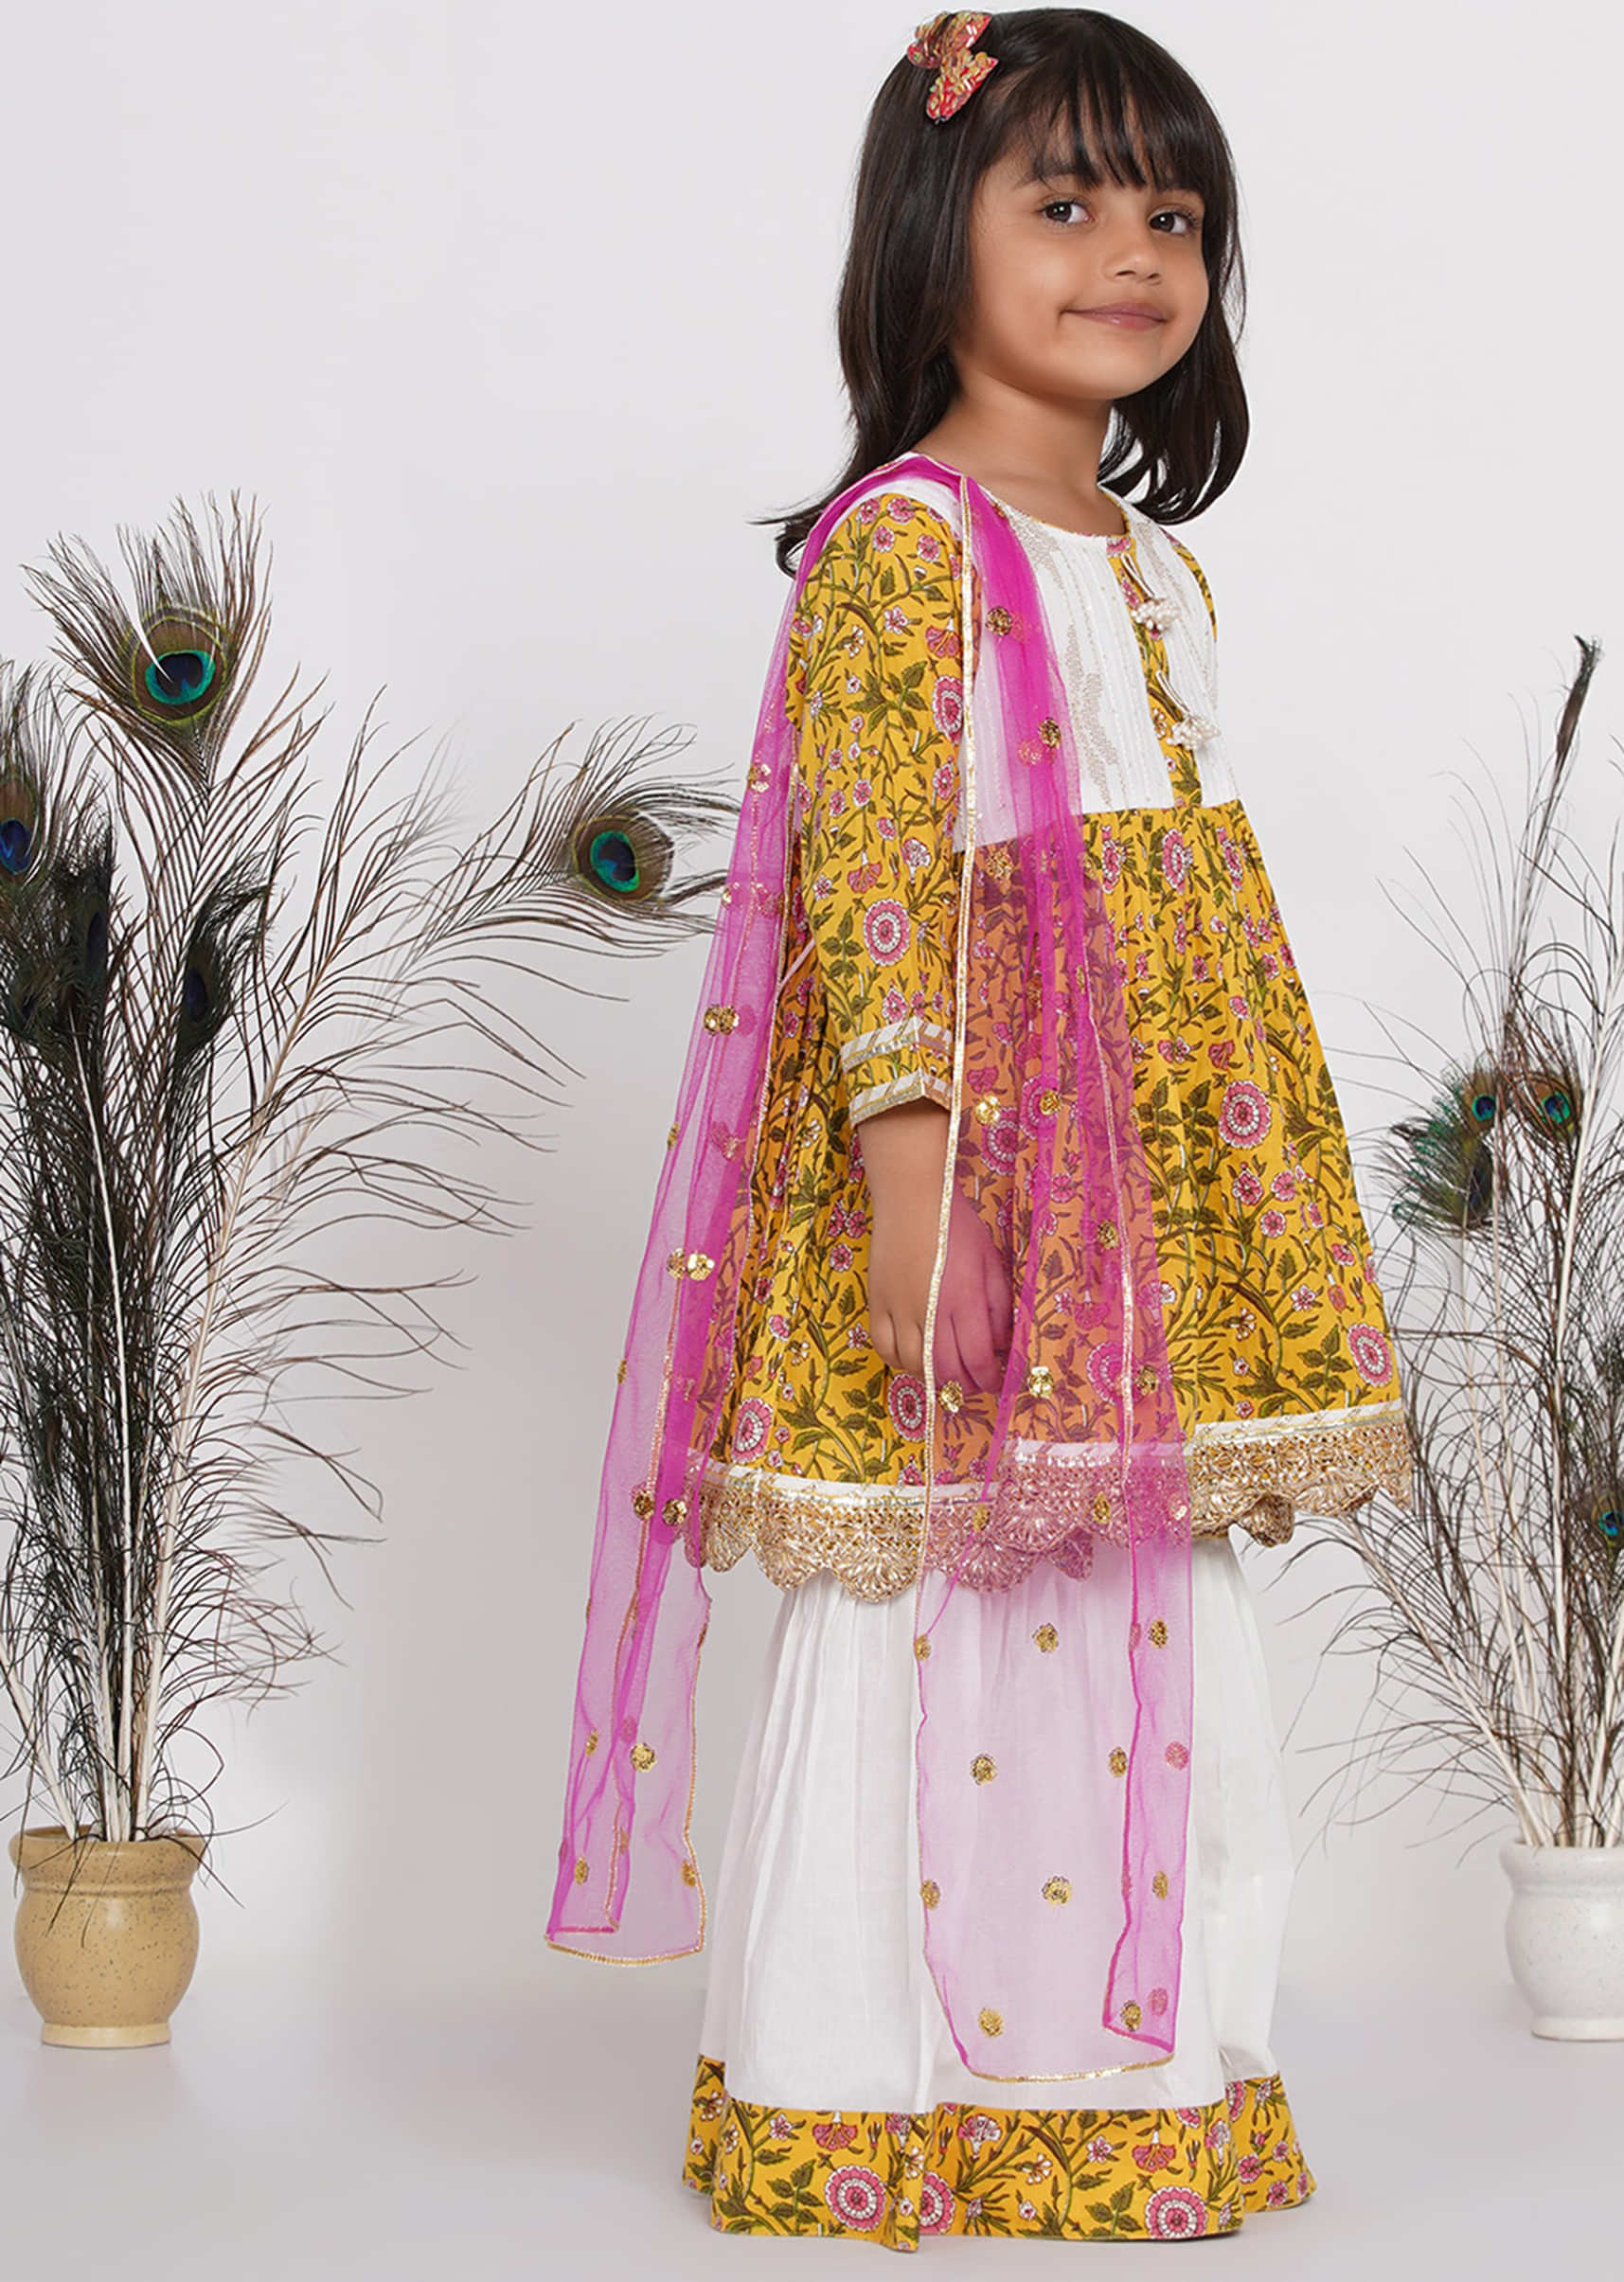 Kalki Girls White & Yellow Floral Jaipuri Kurta With Embroidery Work